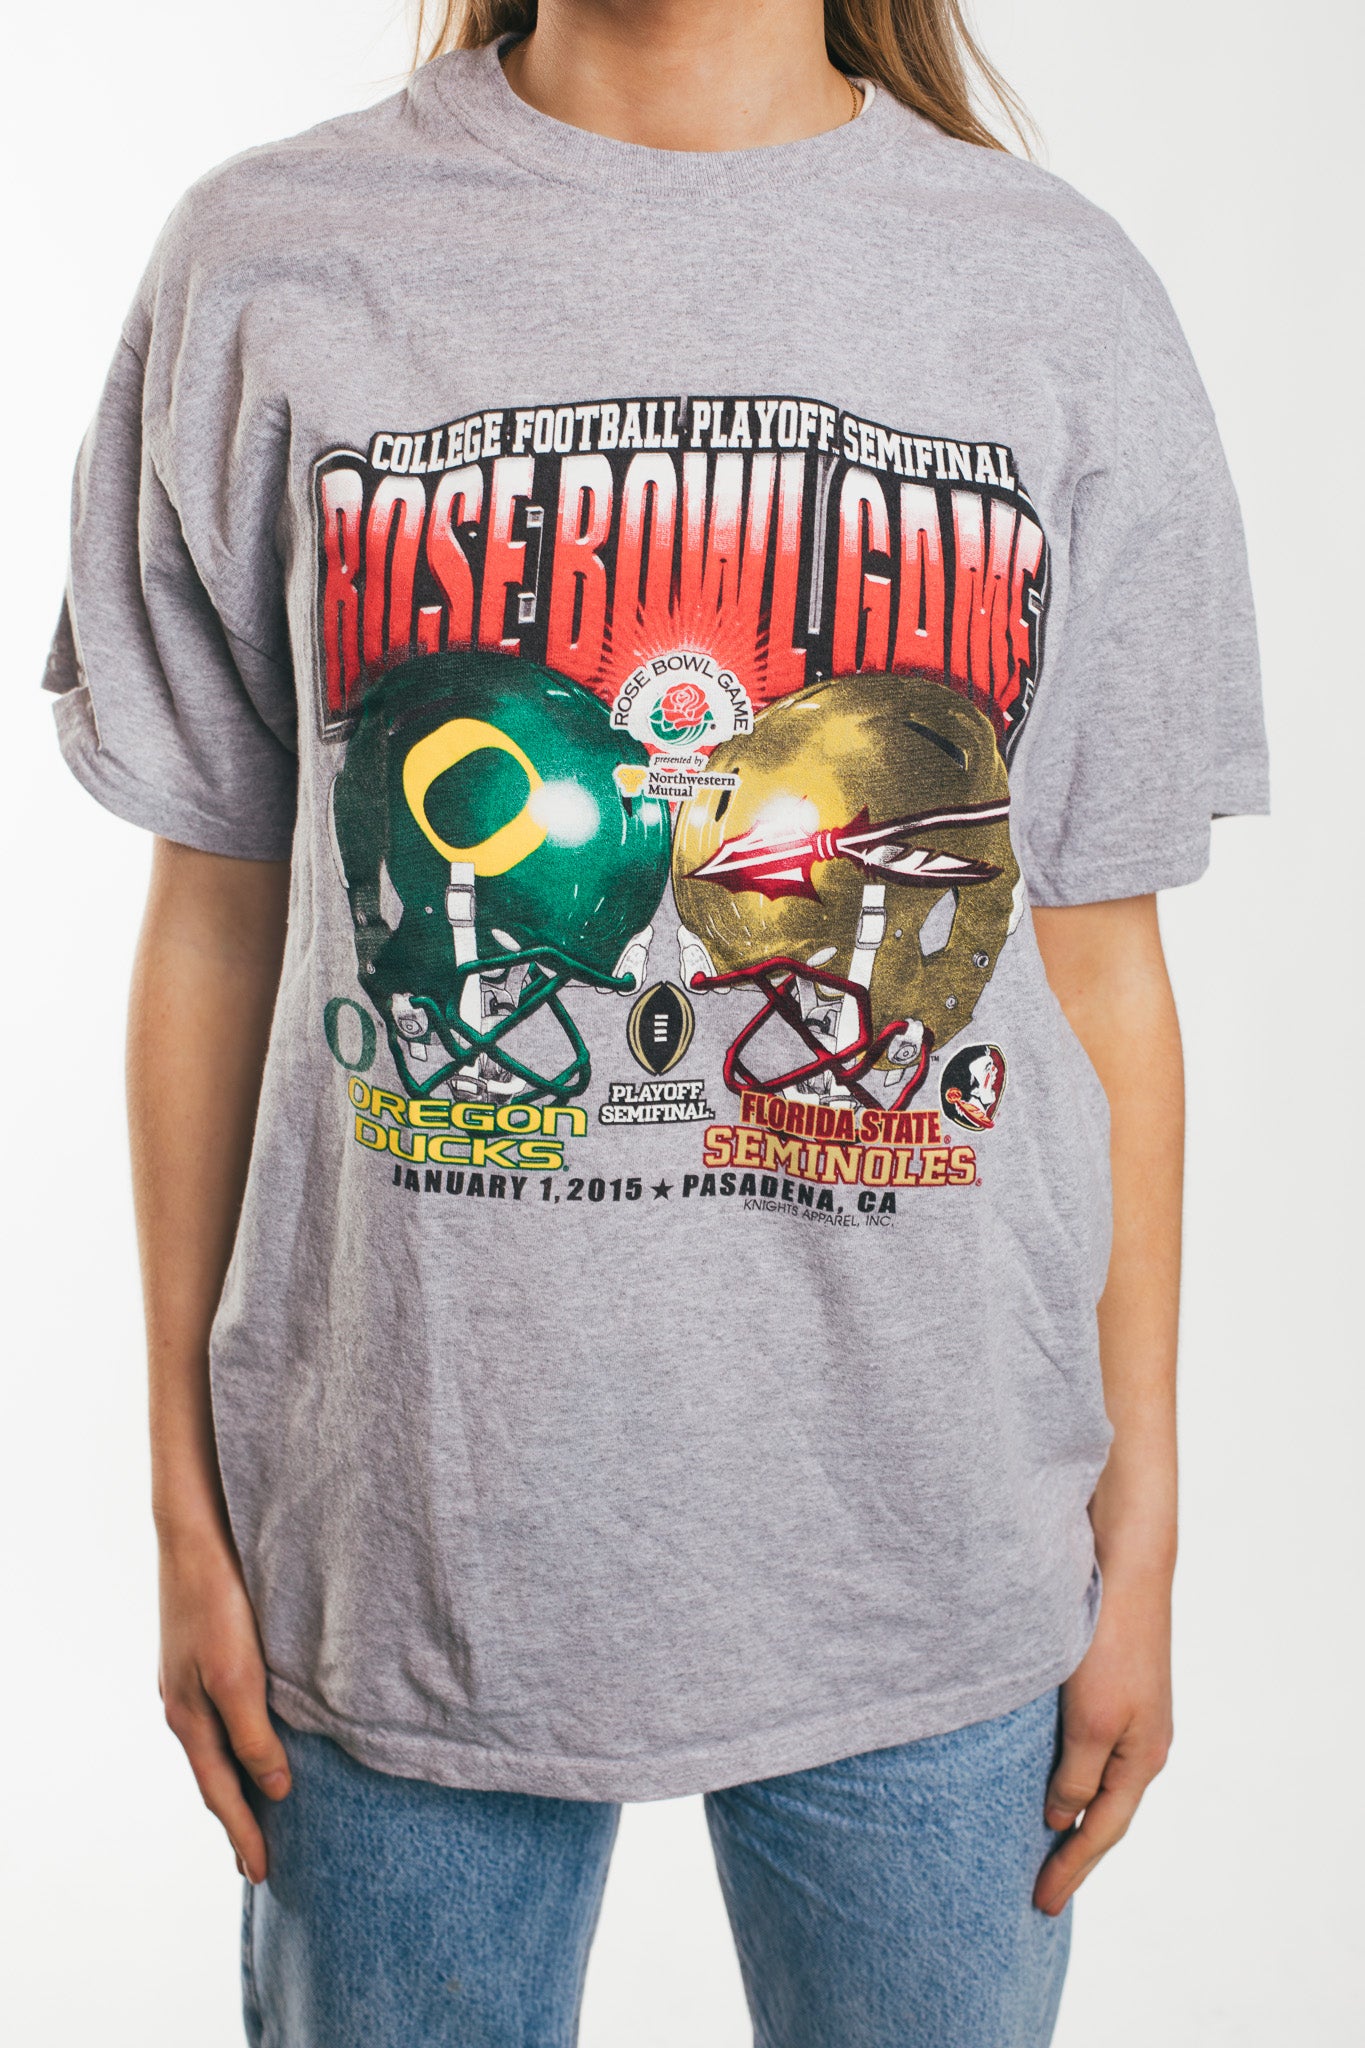 Base Bowl Game - T-Shirt (M)